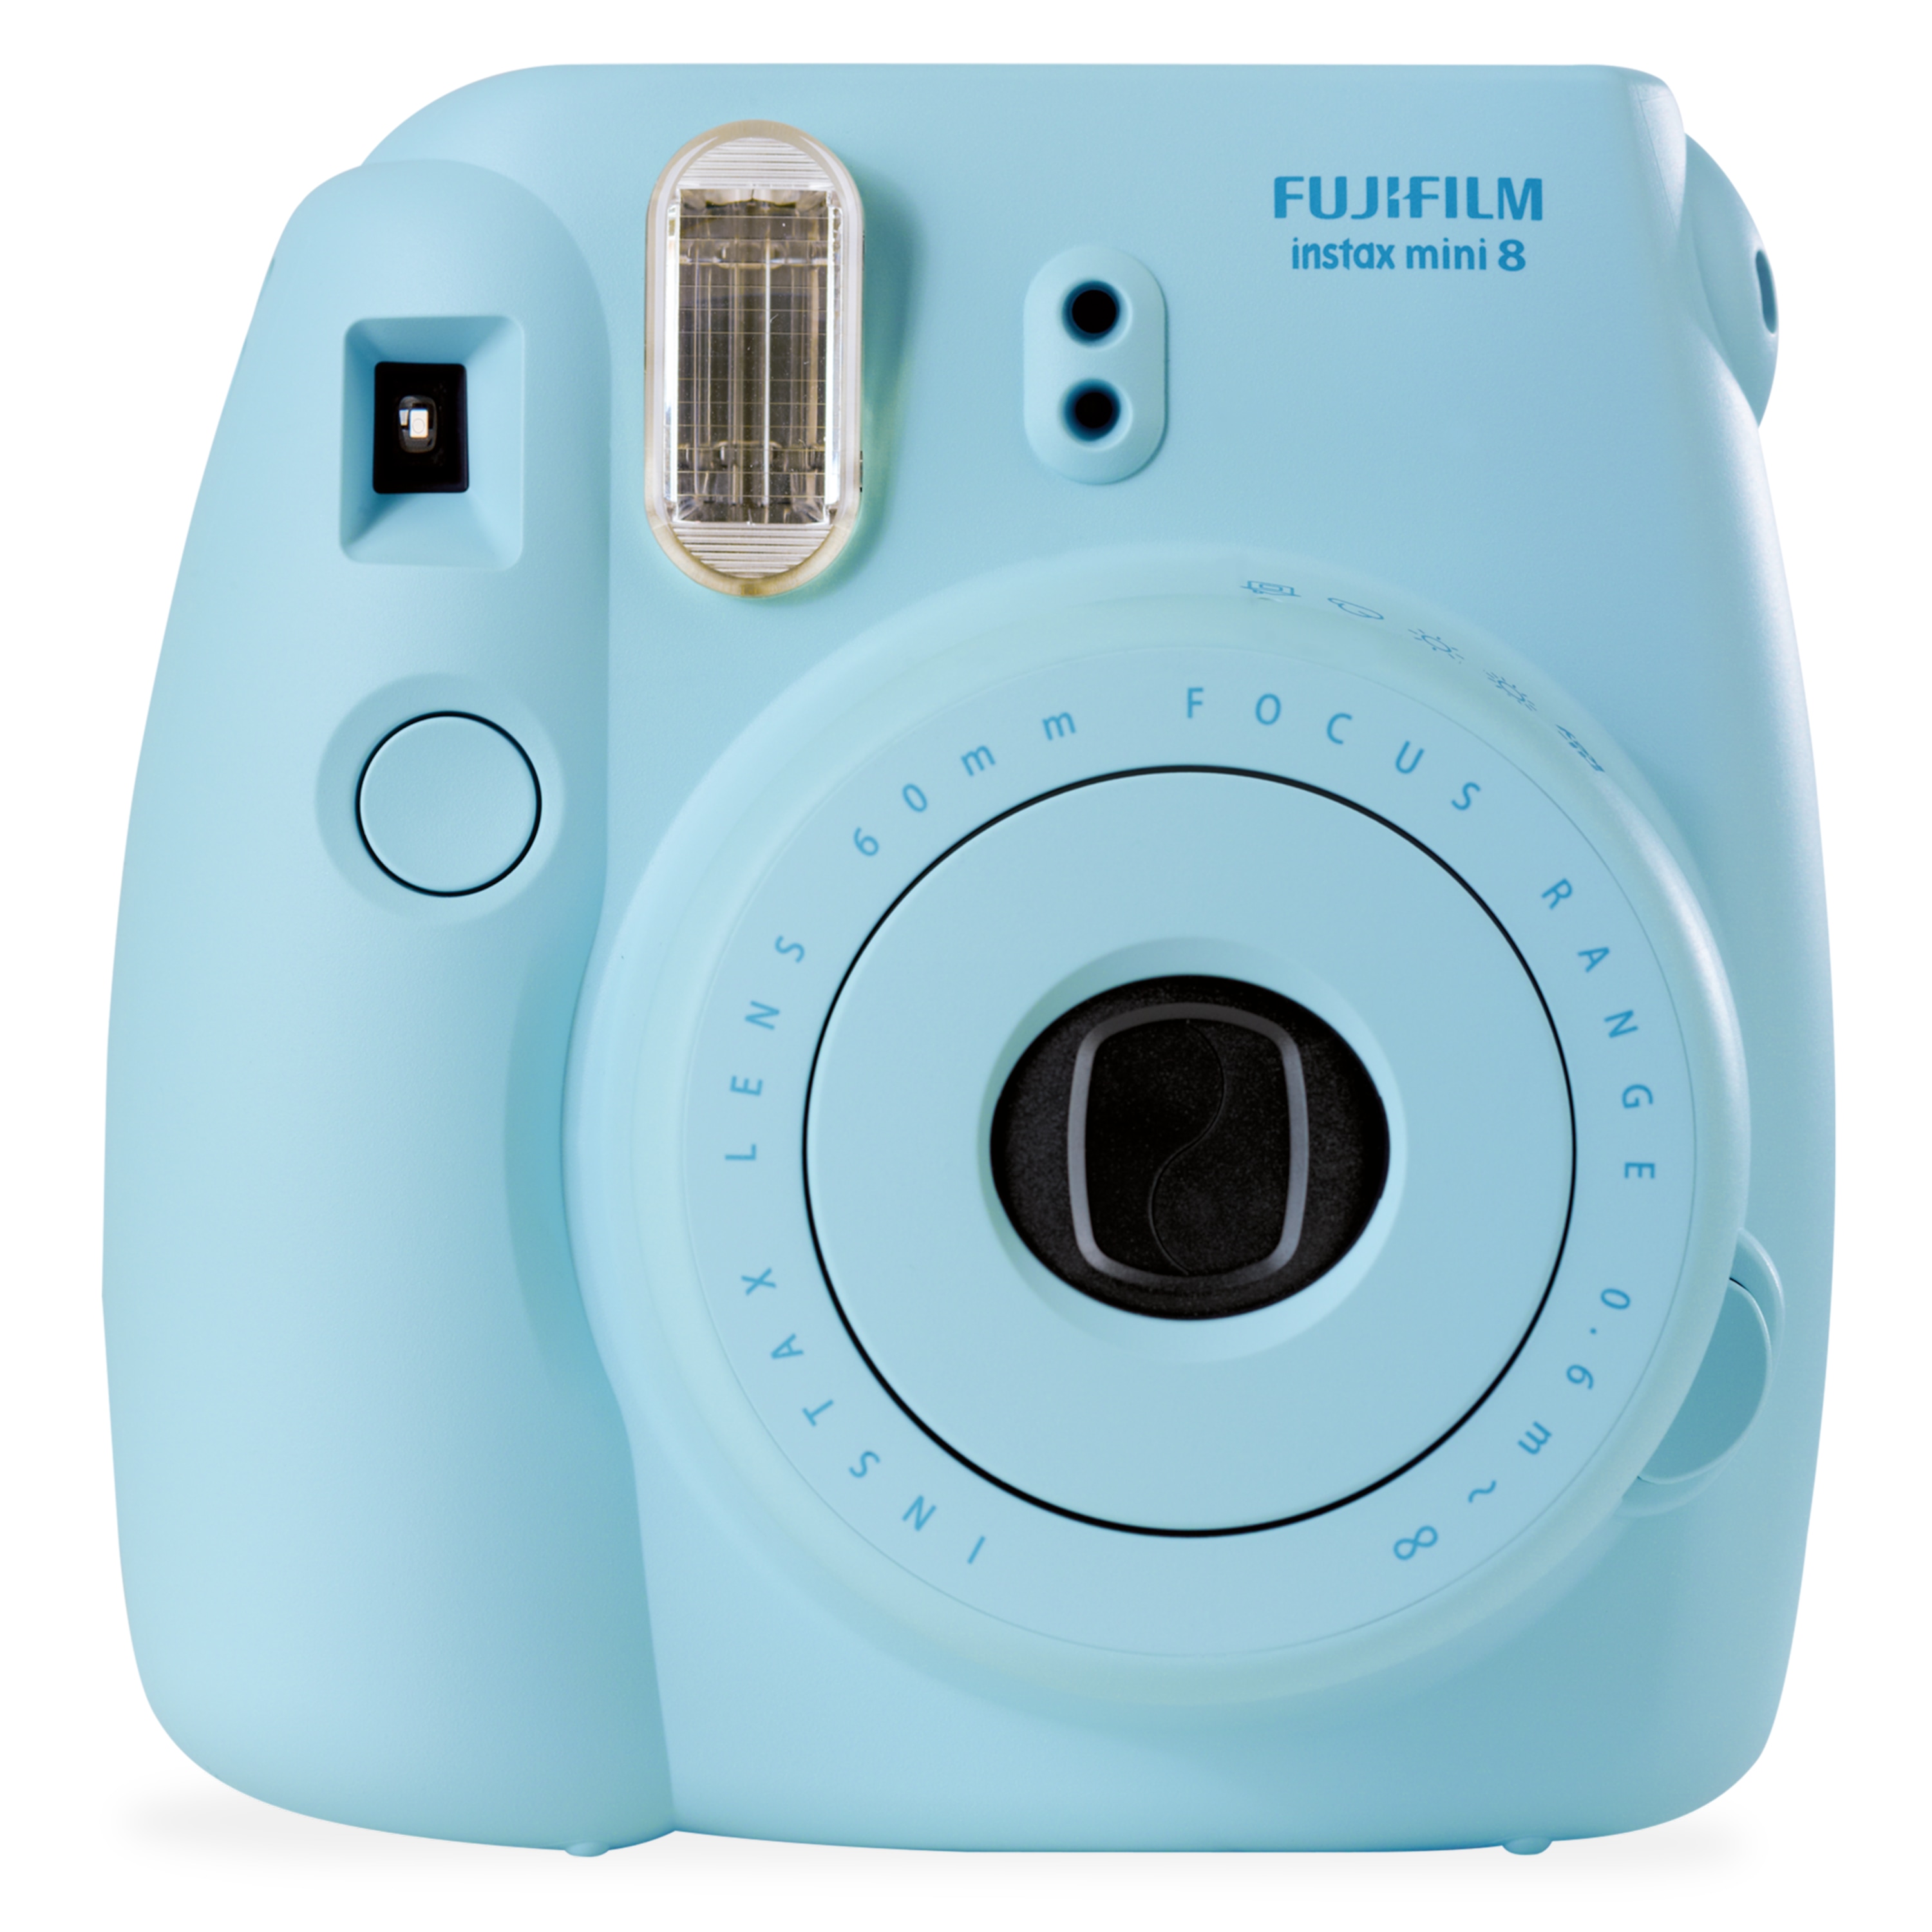 FUJIFILM Instax Mini 8 Sofortbildkamera, kinderleichte Bedienung, manuelle Belichtungseinstellung, High-Key Aufnahmefunktion, Fujinon-Objektiv, integrierter Blitz